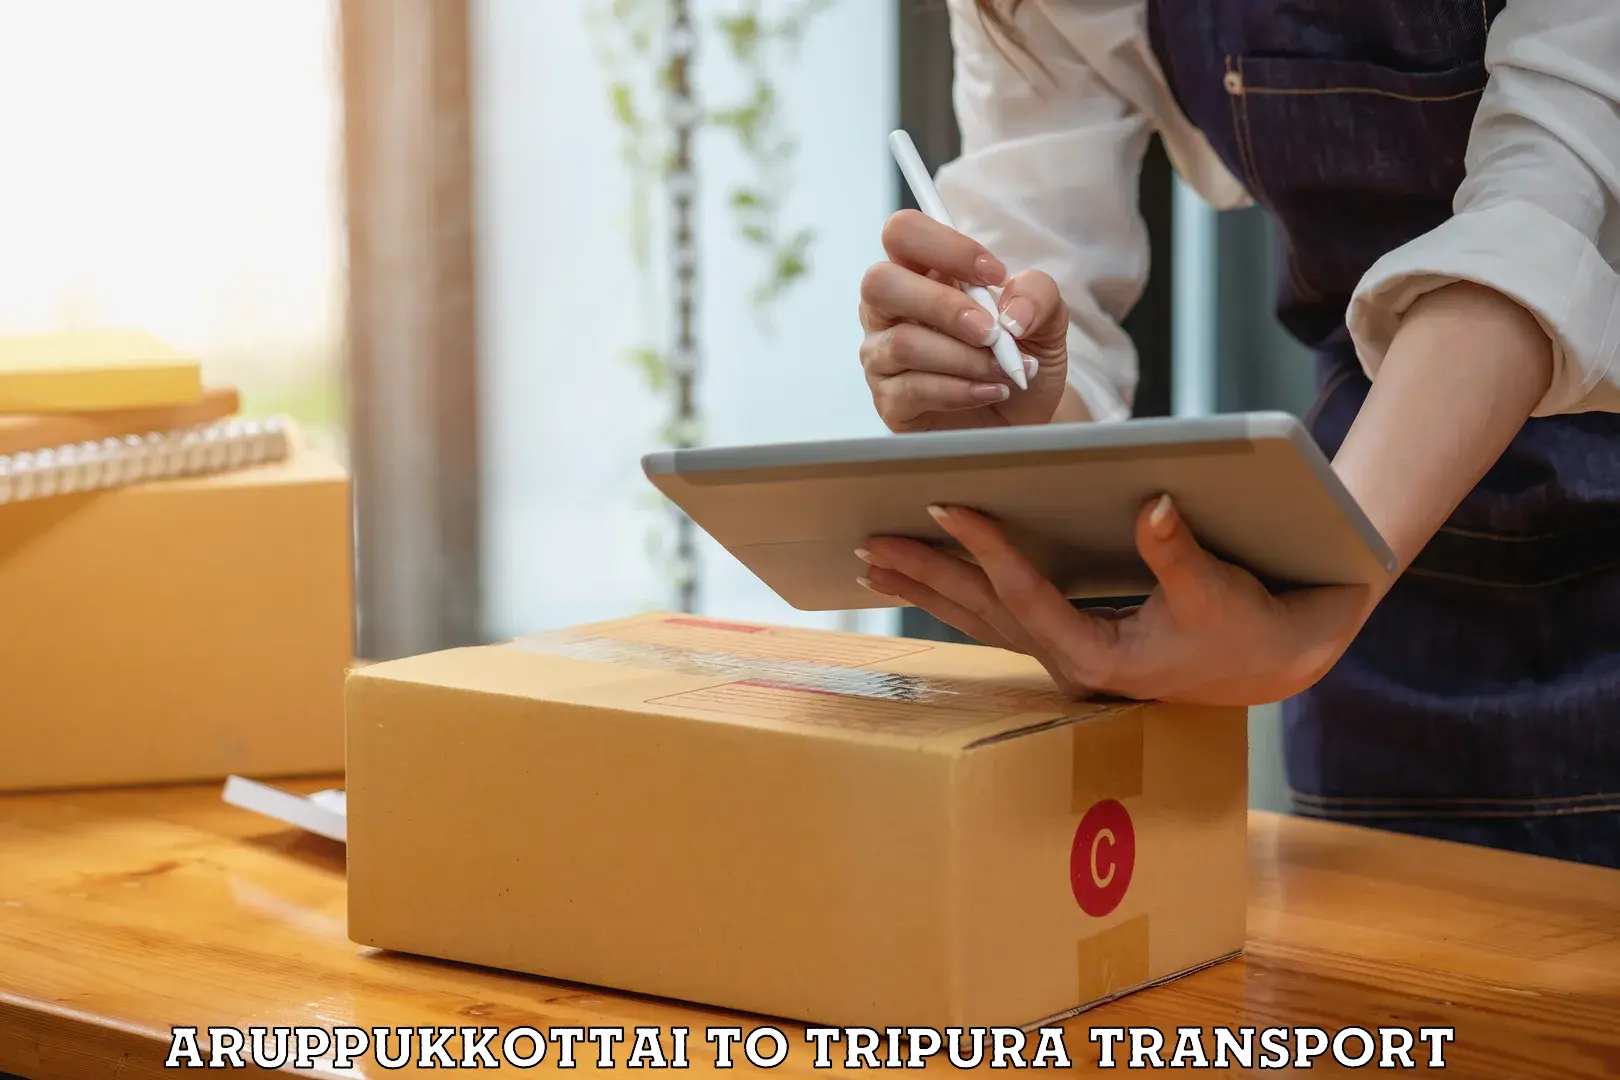 Commercial transport service Aruppukkottai to Sonamura